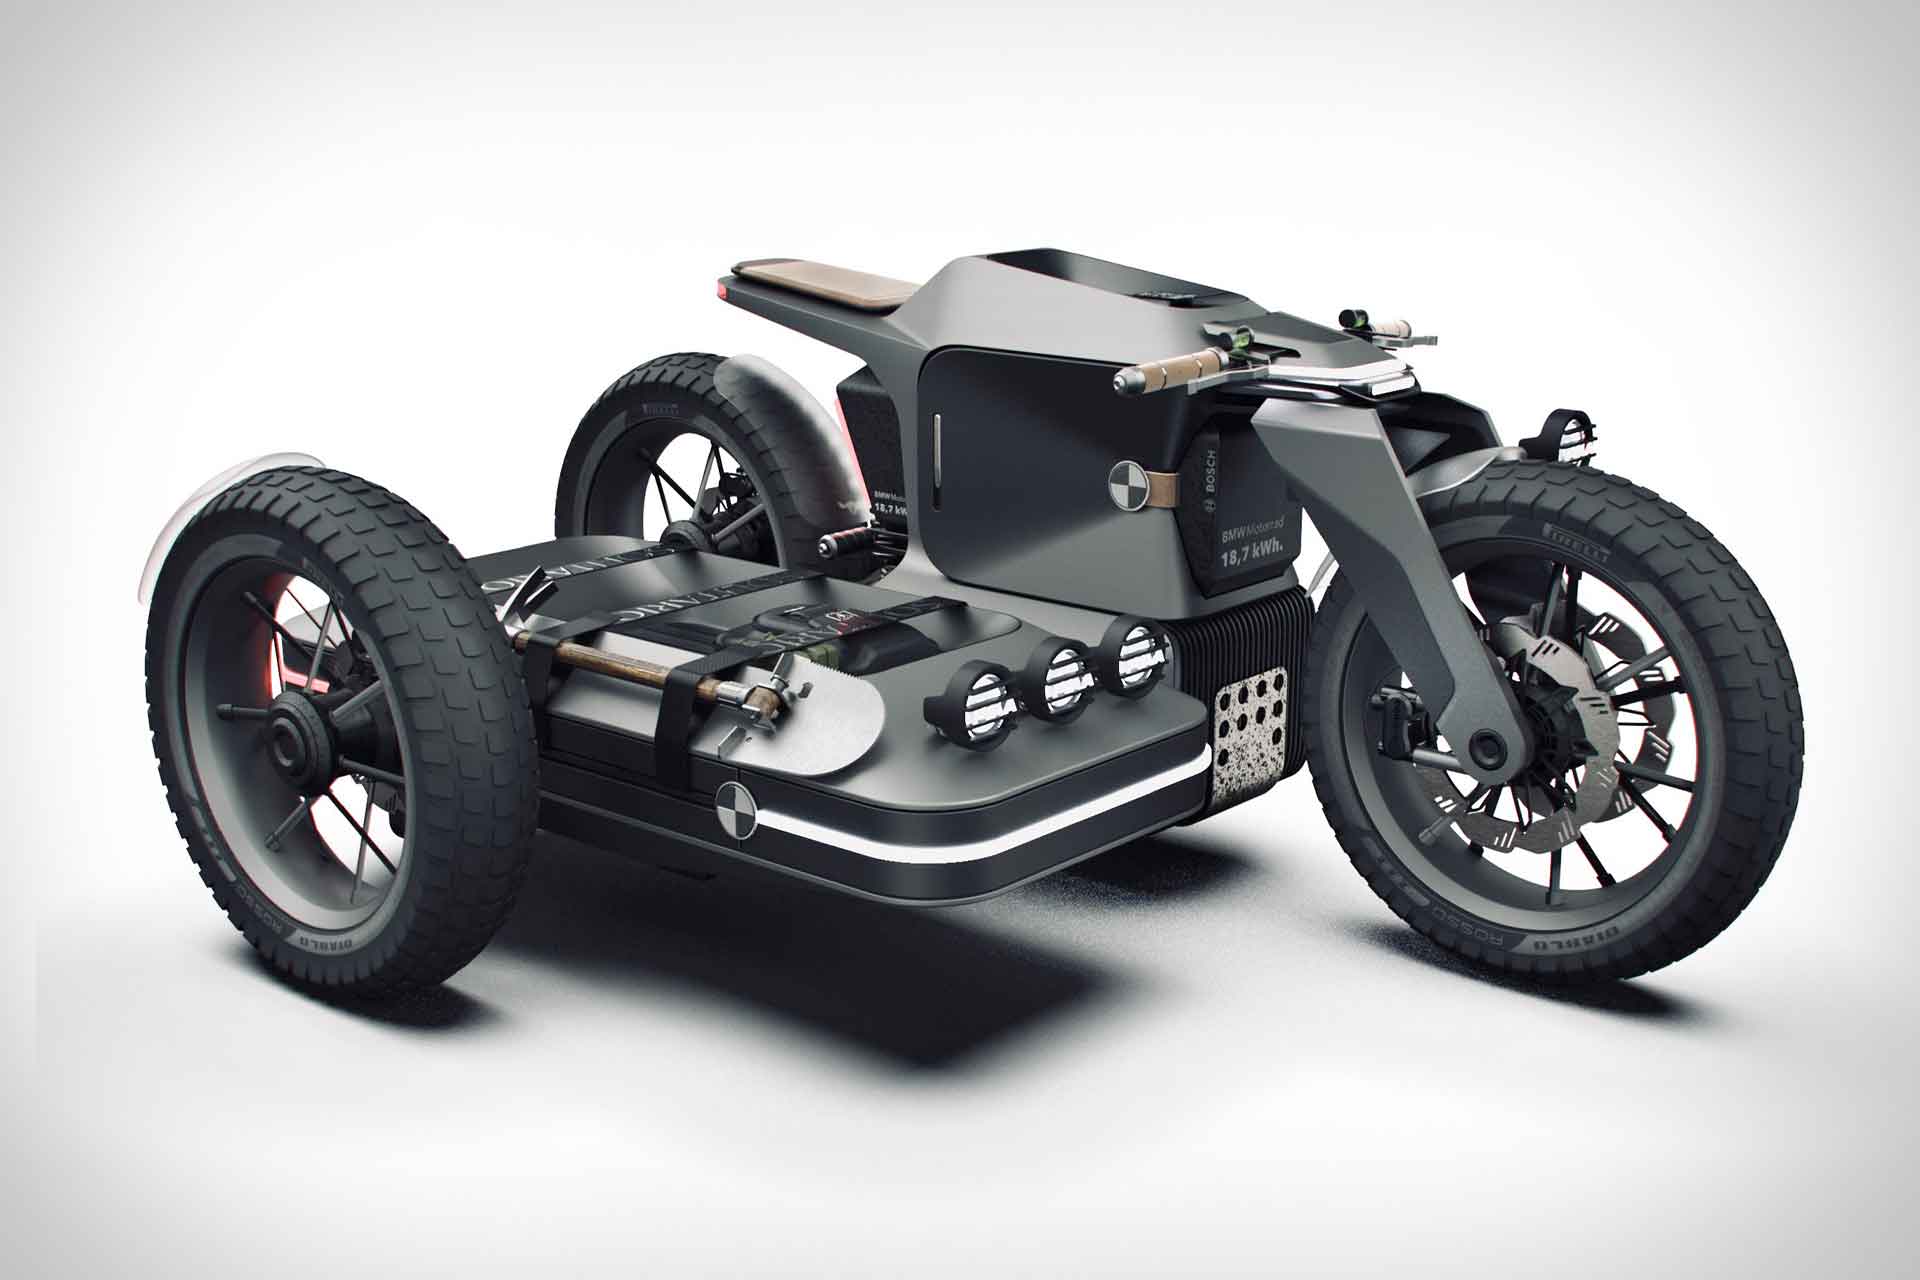 BMW Motorrad x ESMC Off-Road Motorcycle Concept | Uncrate